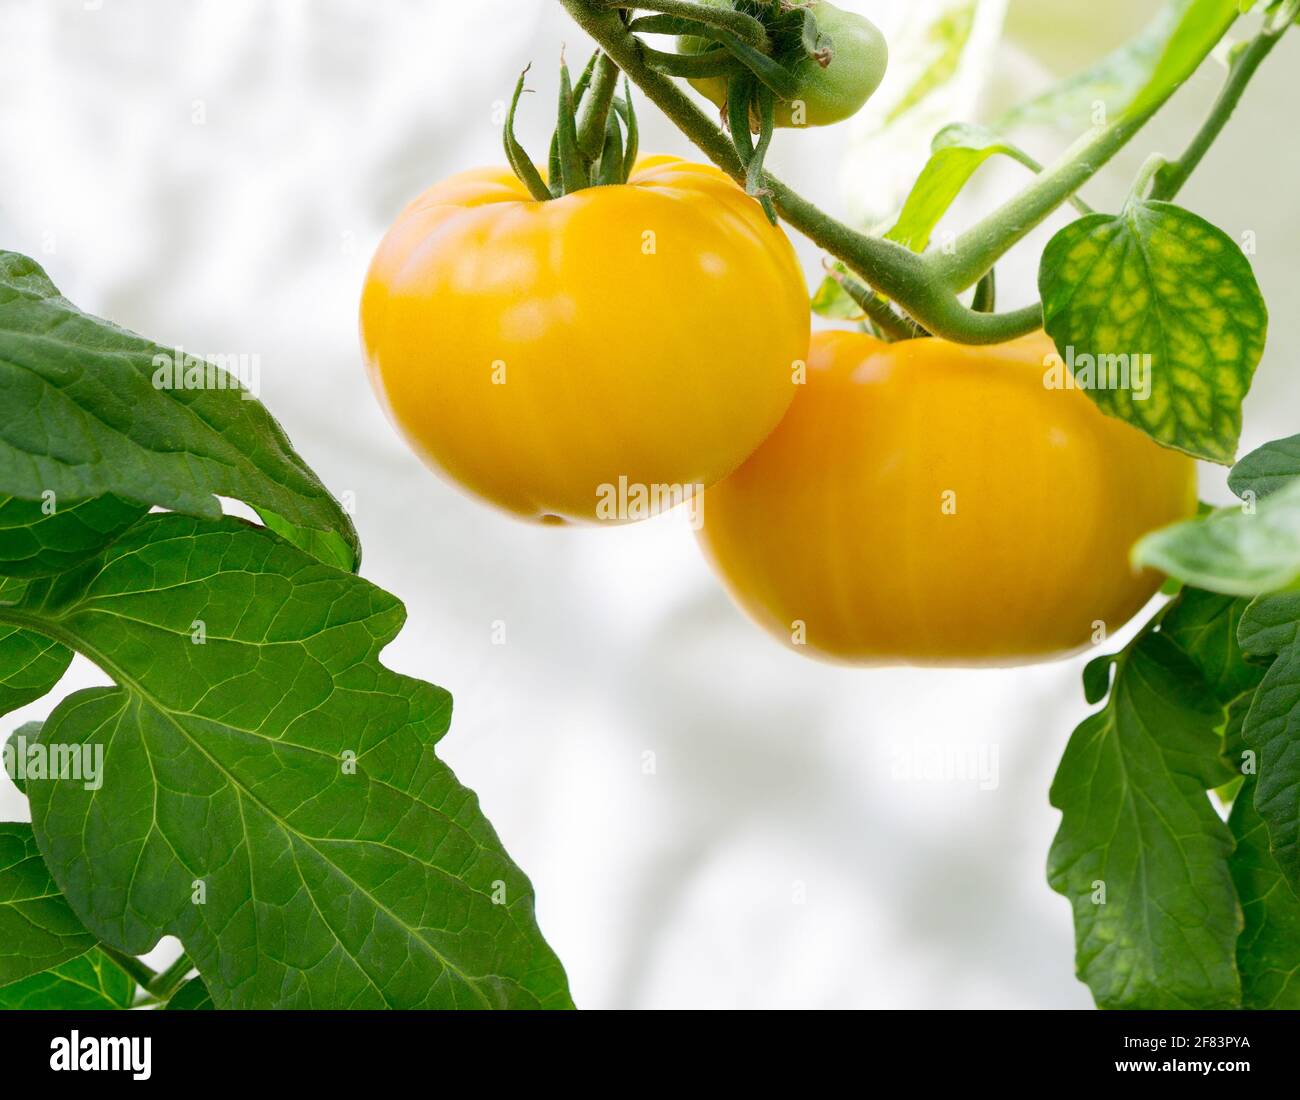 Tomate wächst auf Pflanze. Gewächshaus mit Bio-gelben leckeren Tomaten. Nahaufnahme. Stockfoto